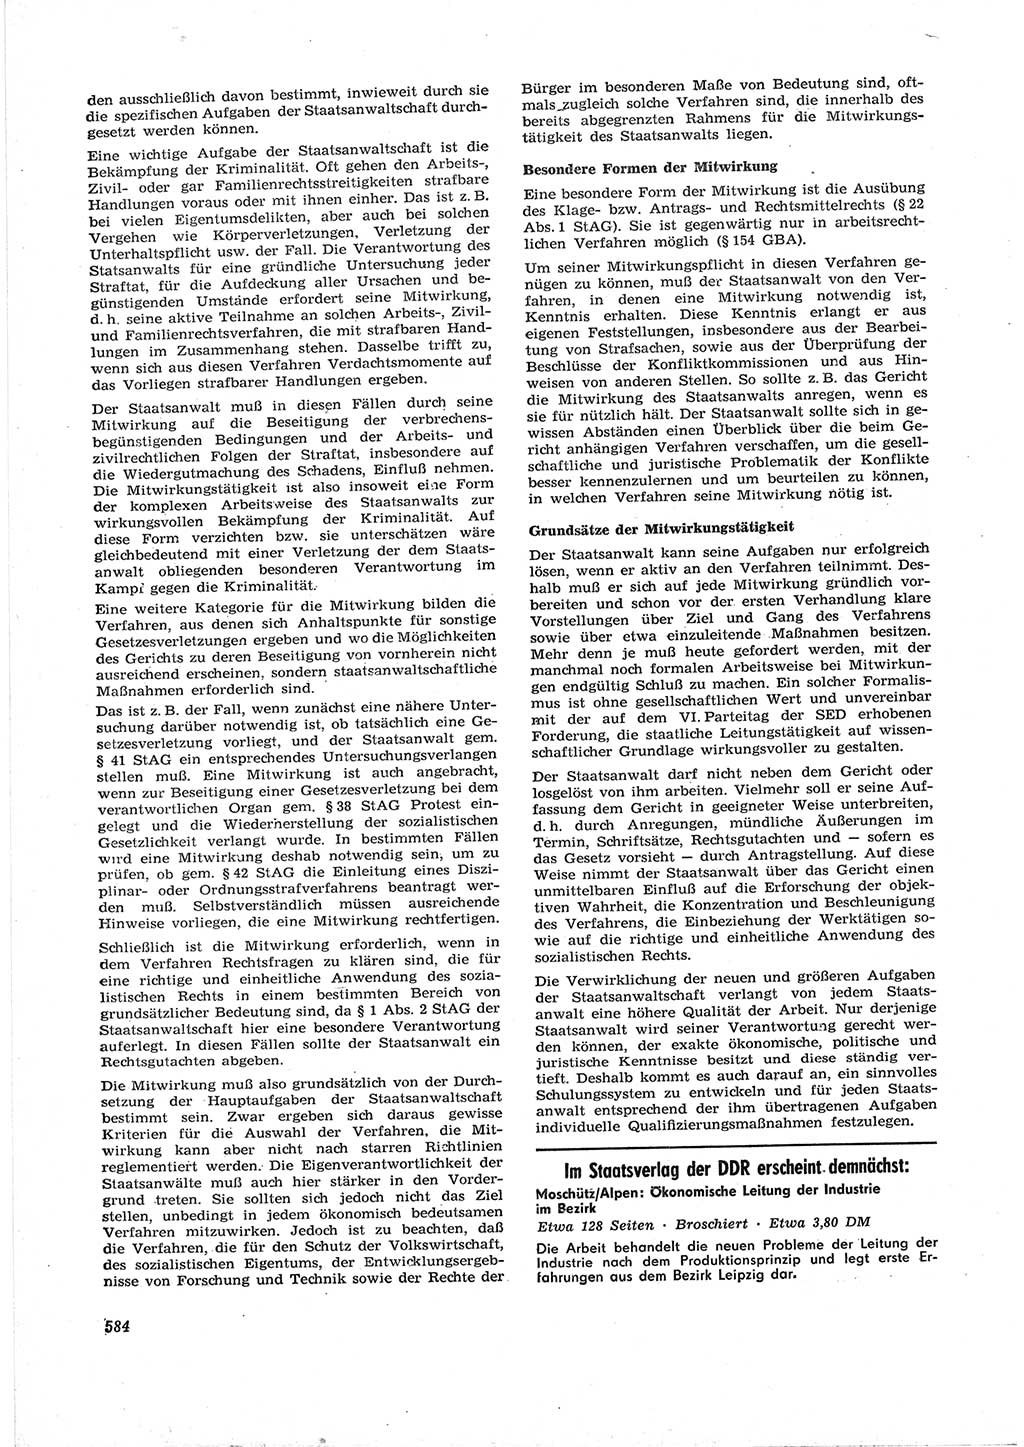 Neue Justiz (NJ), Zeitschrift für Recht und Rechtswissenschaft [Deutsche Demokratische Republik (DDR)], 17. Jahrgang 1963, Seite 584 (NJ DDR 1963, S. 584)